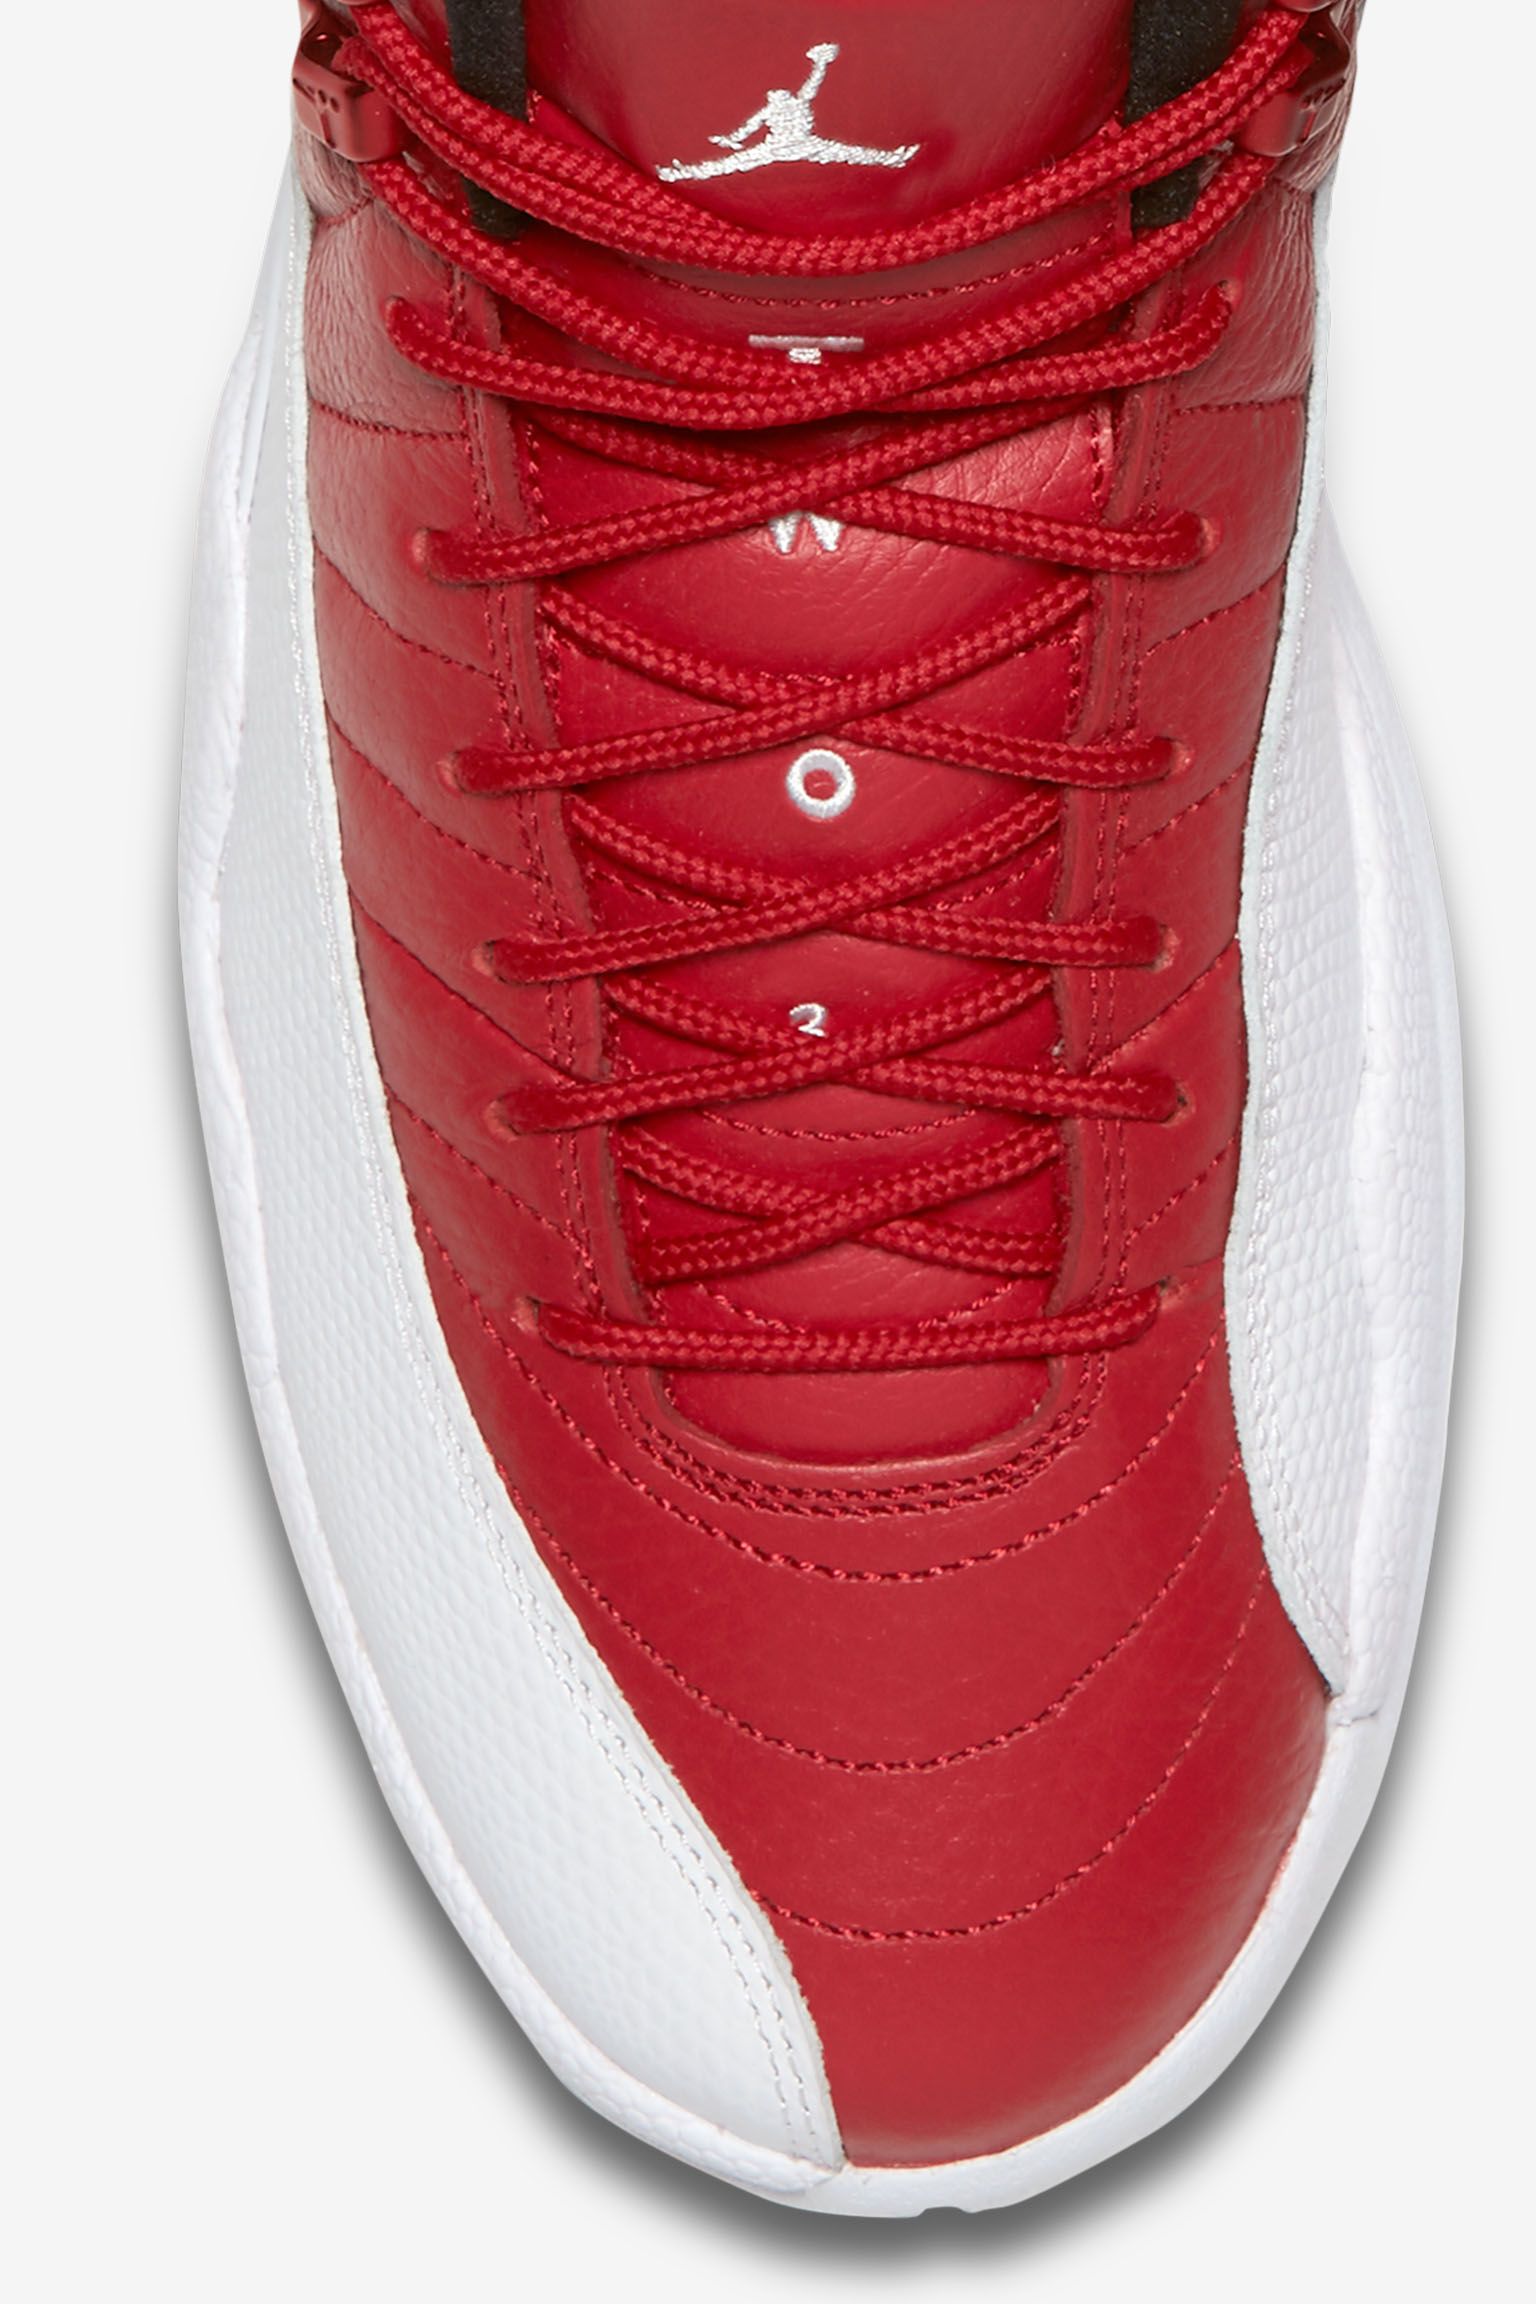 Air Jordan 12 Retro 'Alternate' Release Date. Nike SNKRS